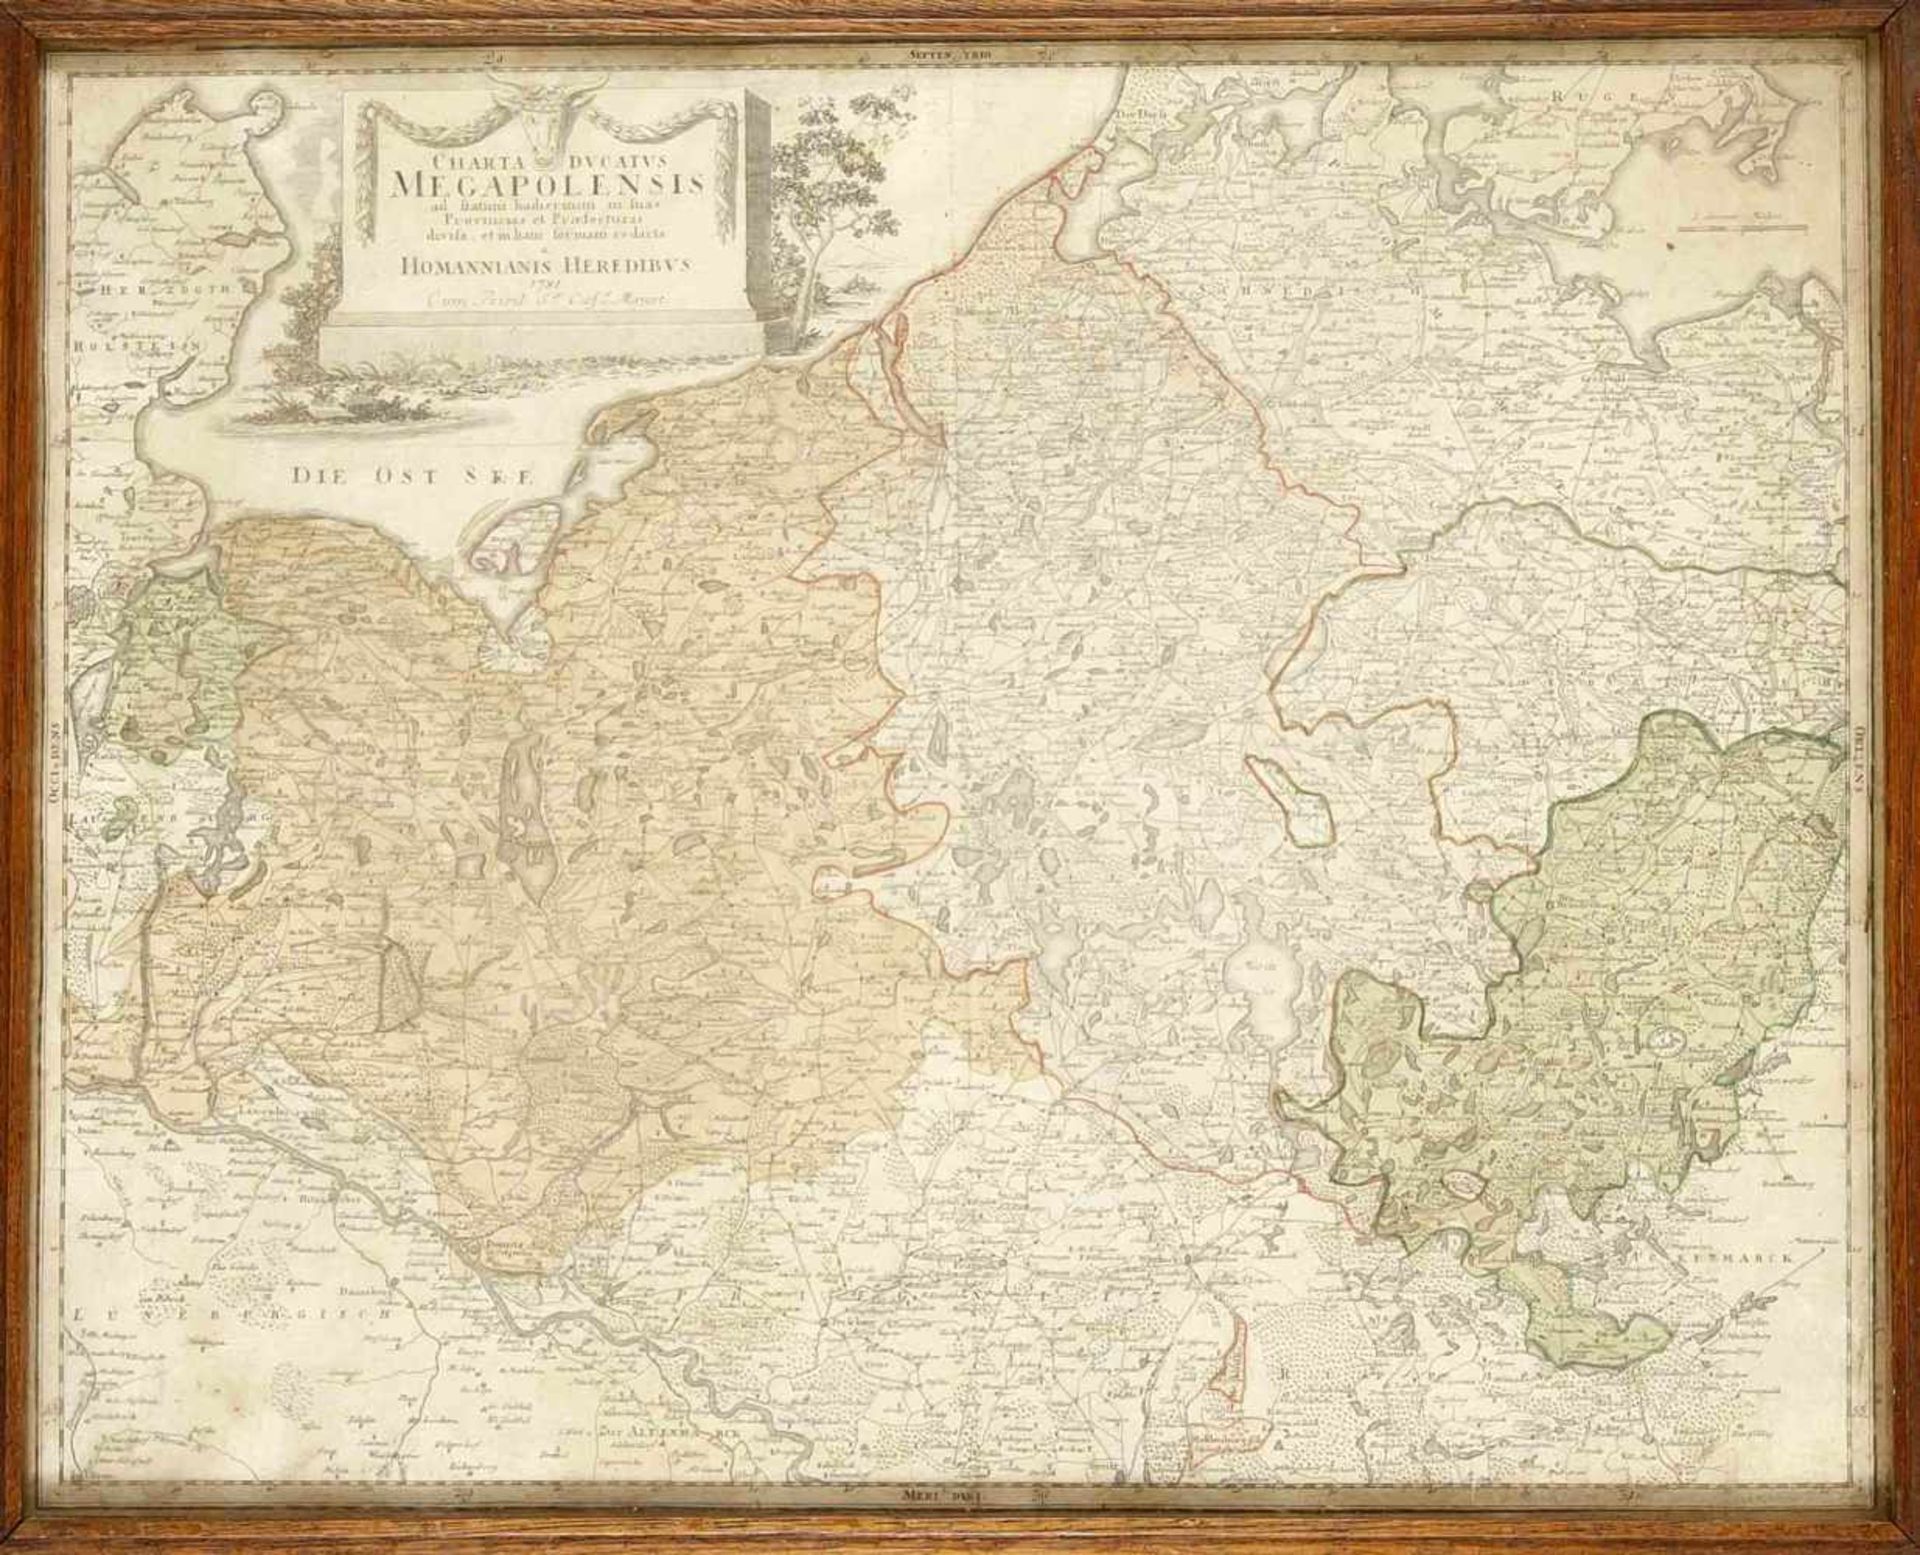 Historische Karte von Mecklenburg, 18. Jh., "Charta ducatus Megapolensis", teilkol. Kupferbei Homann